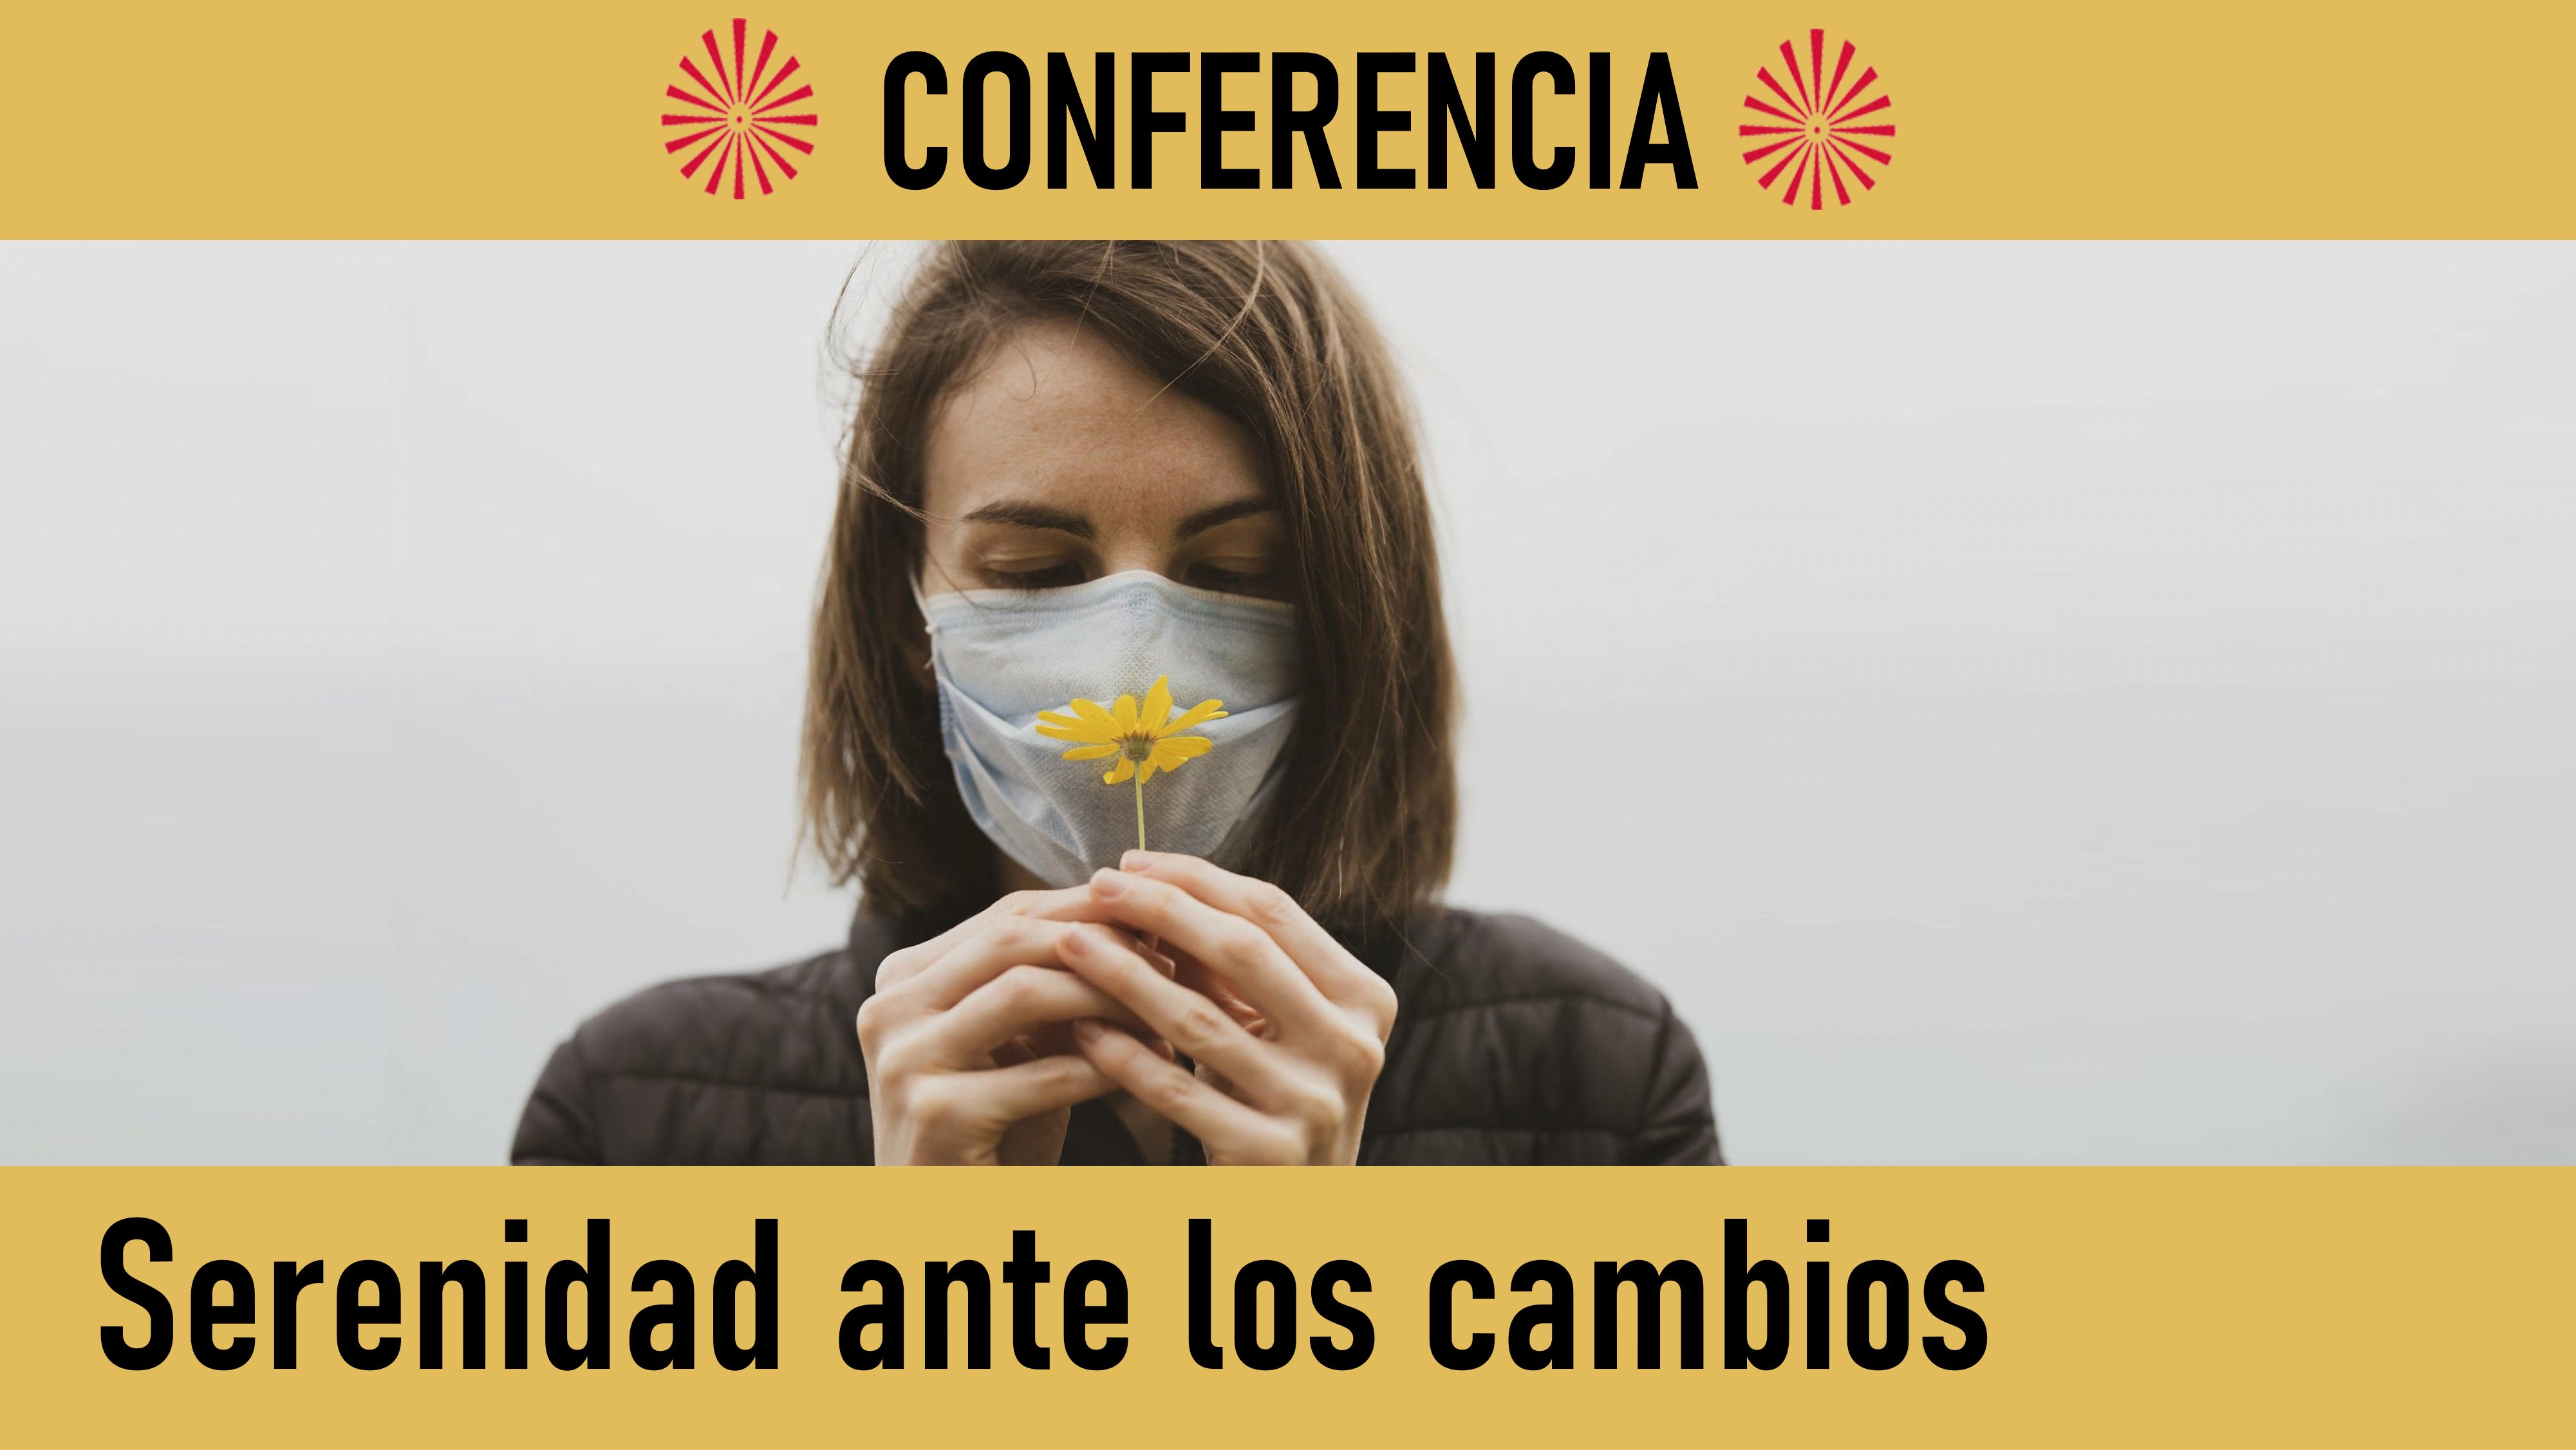 Conferencia: Serenidad ante los cambios (28 Mayo 2020) On-line desde Madrid